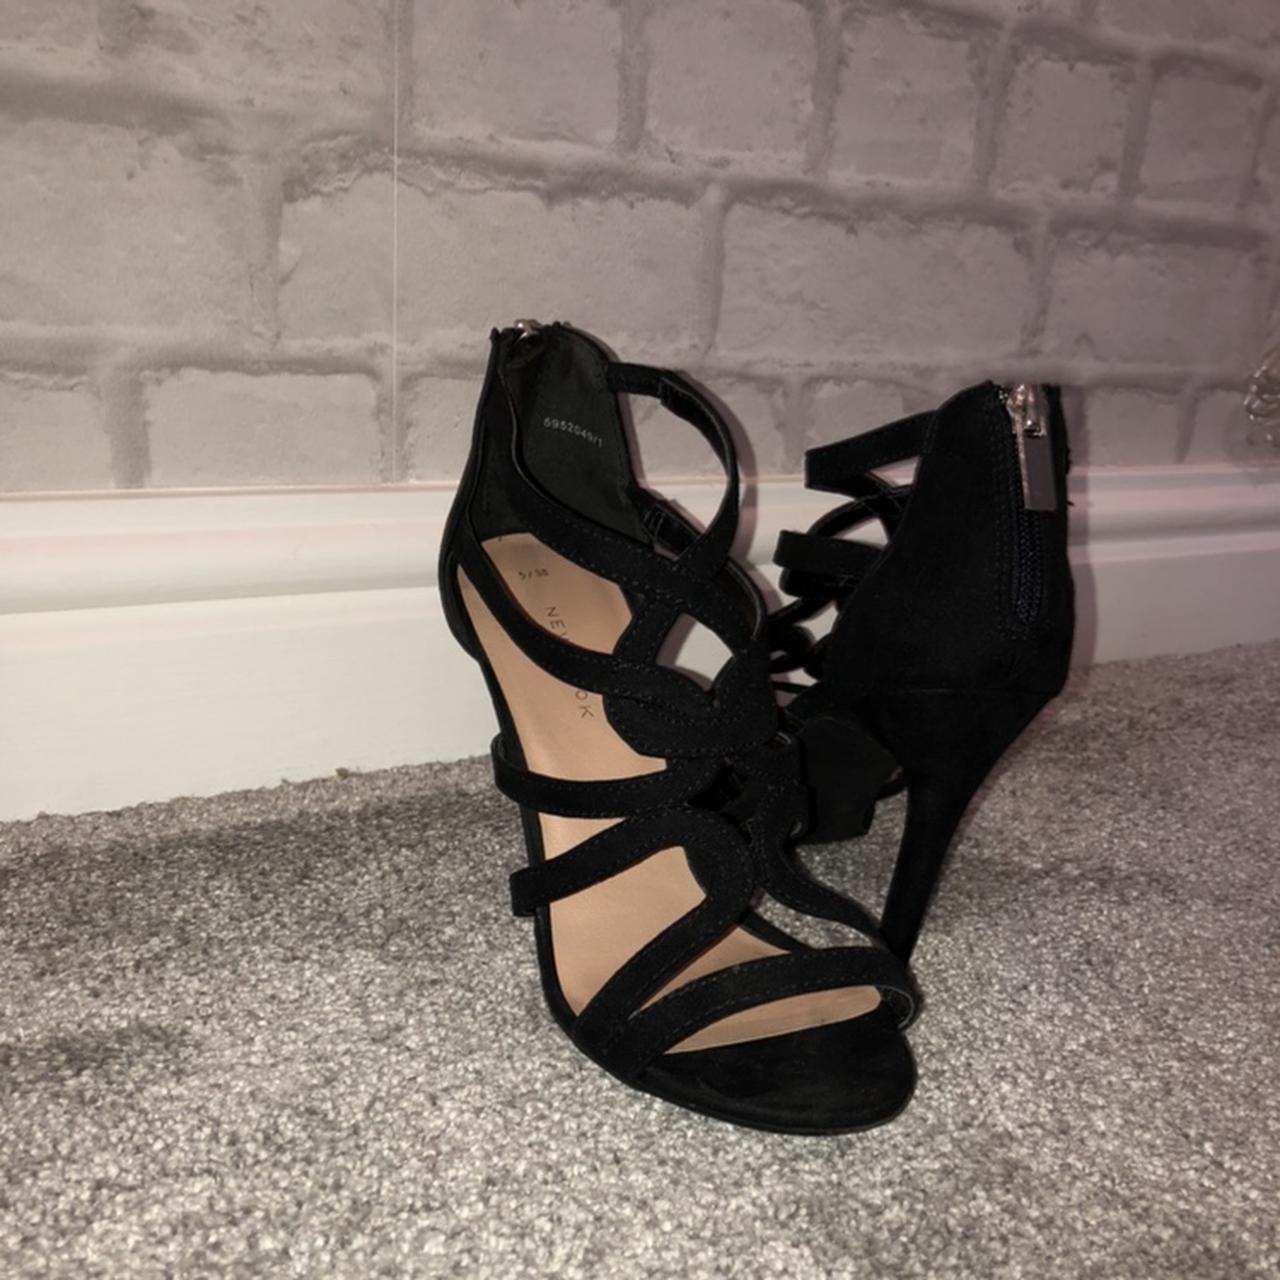 Black strappy stiletto heels Good condition Worn a... - Depop